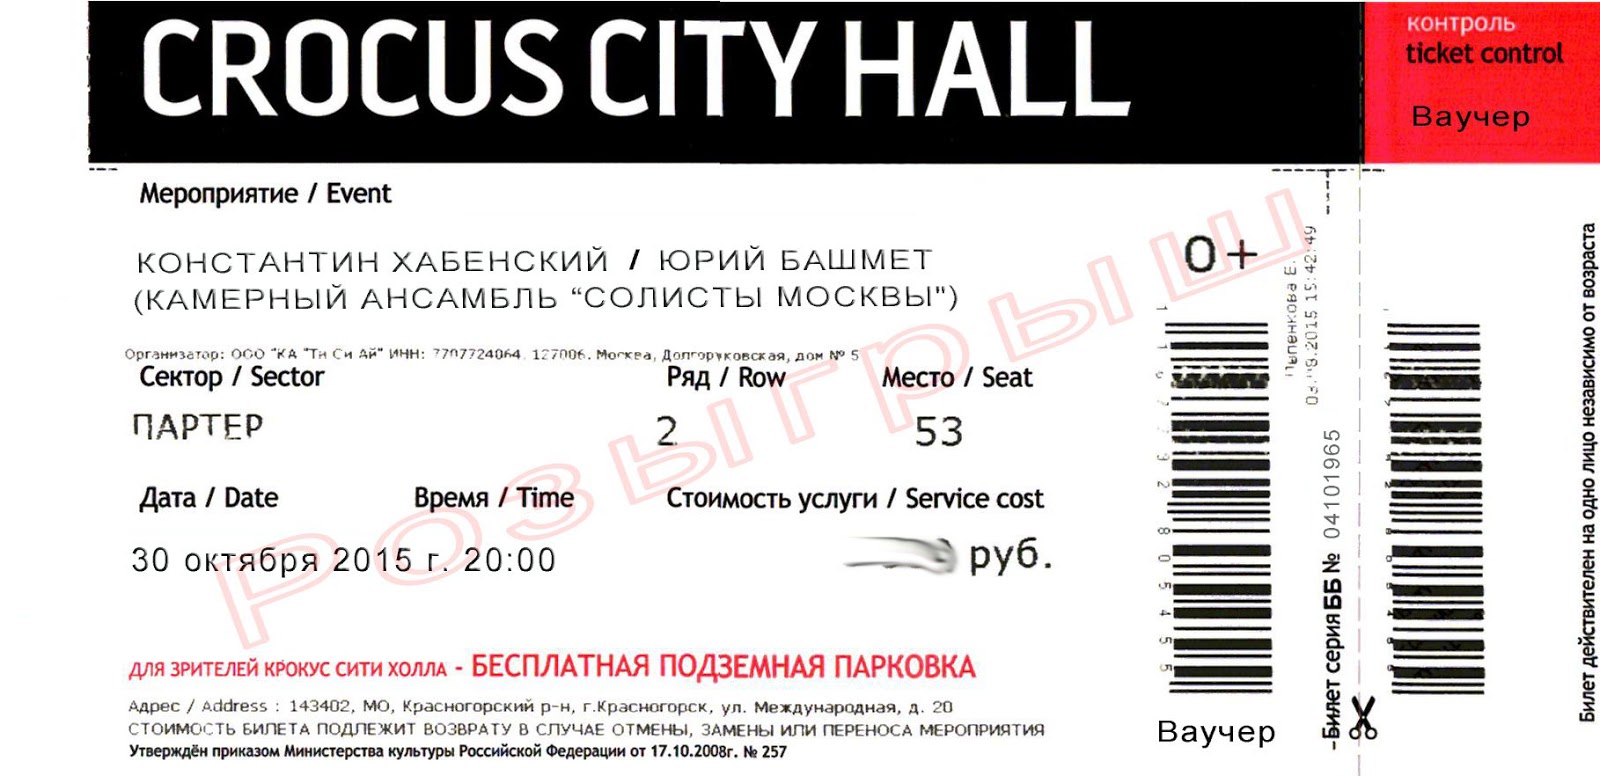 Стоимость билетов на концерт в крокус сити. Электронный билет Крокус Сити Холл. Крокус Сити Холл билеты. Билет в Крокус Сити Холл на концерт. Крокус билеты.